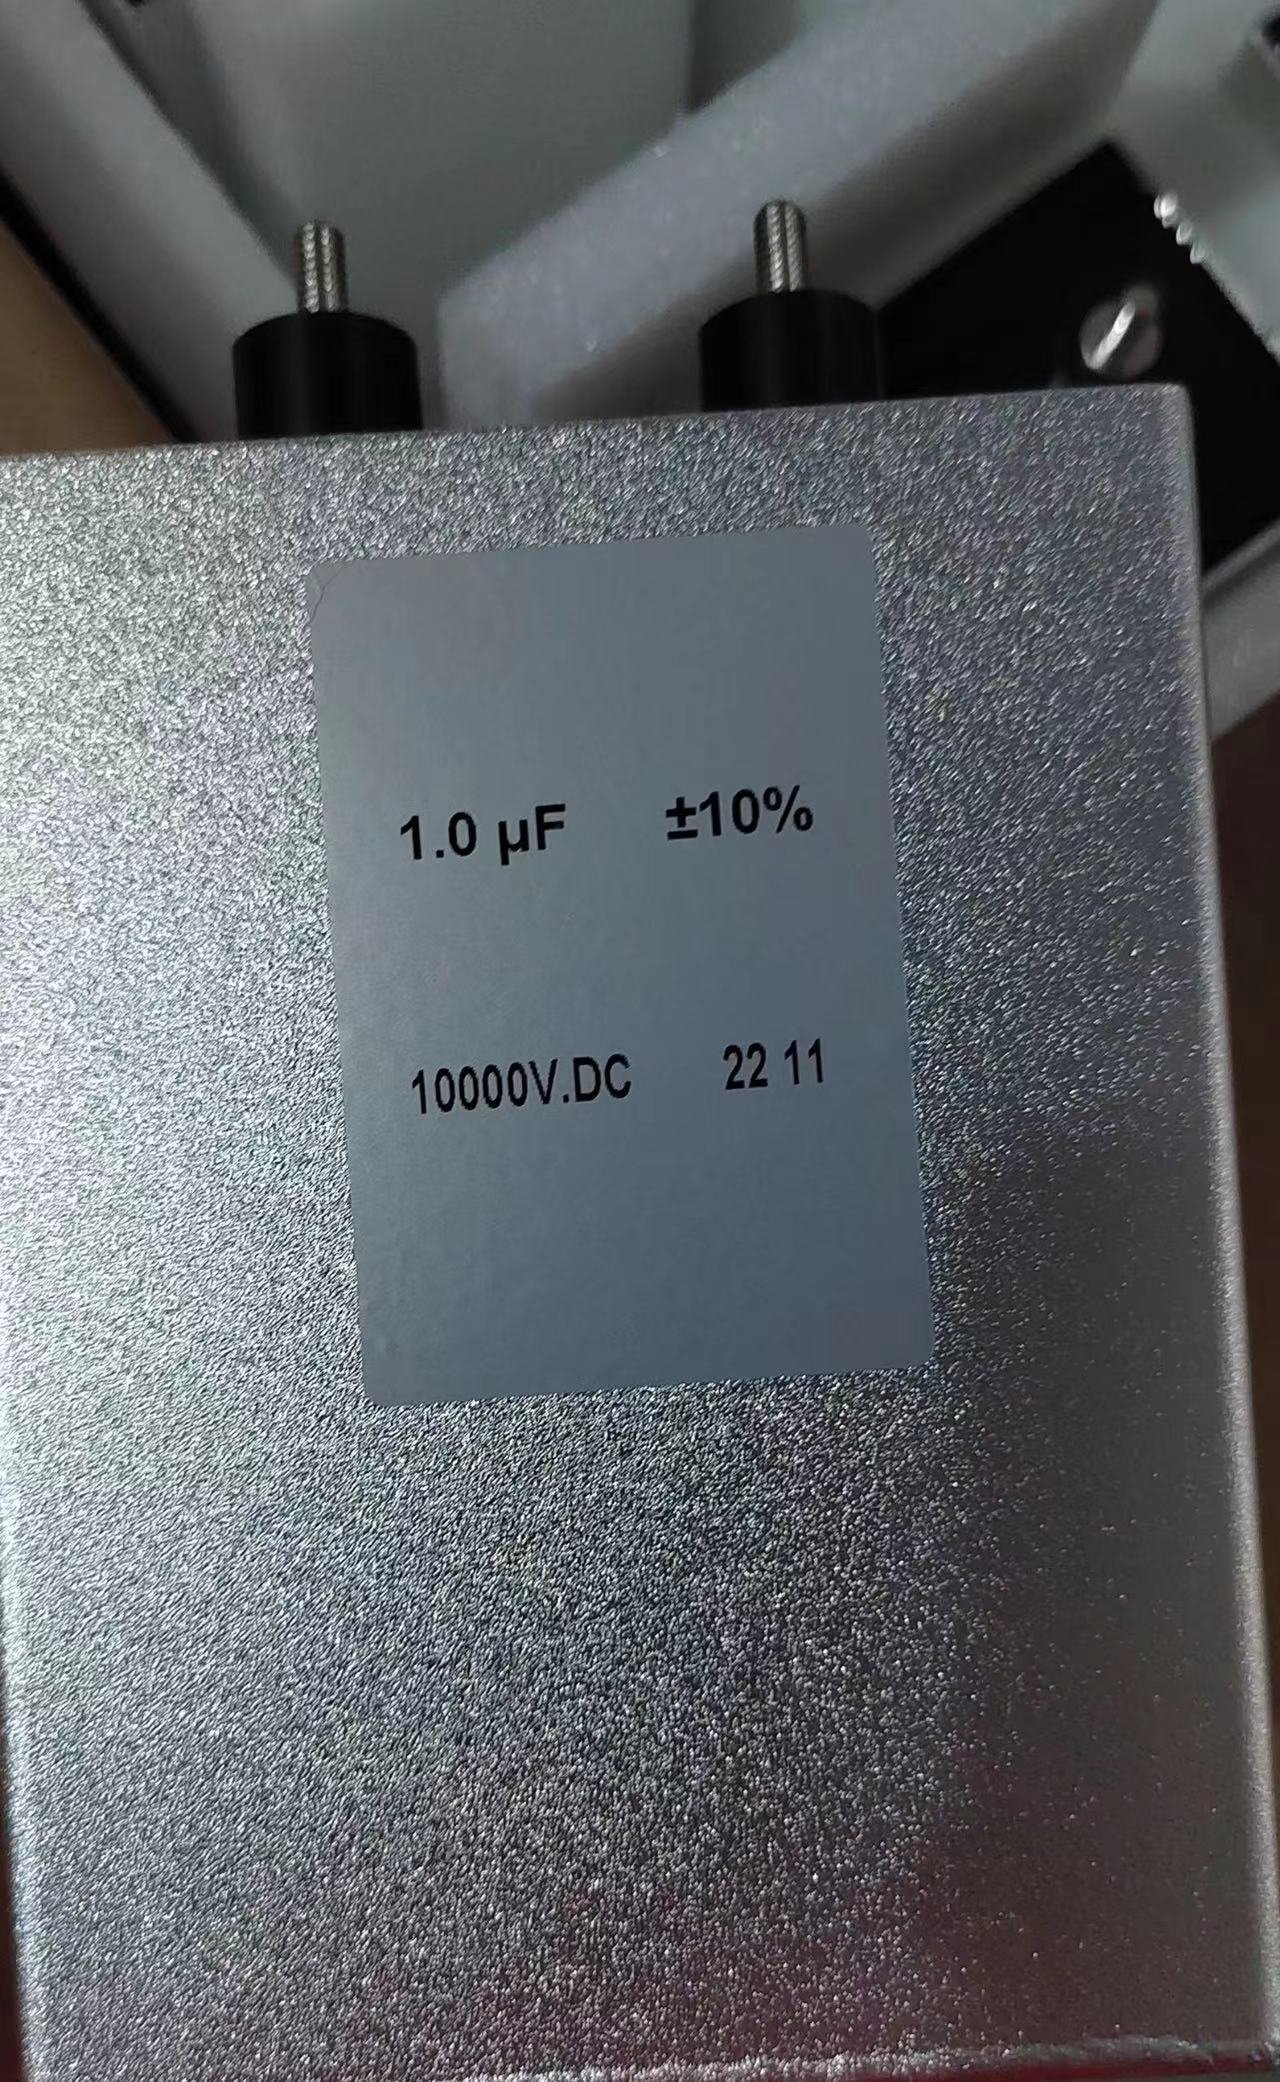 미국 시장 VA 1.0UF 10000V 중국산 의료용 PEMF 펄스 전자기장 치료기 용 고전압 필름 커패시터